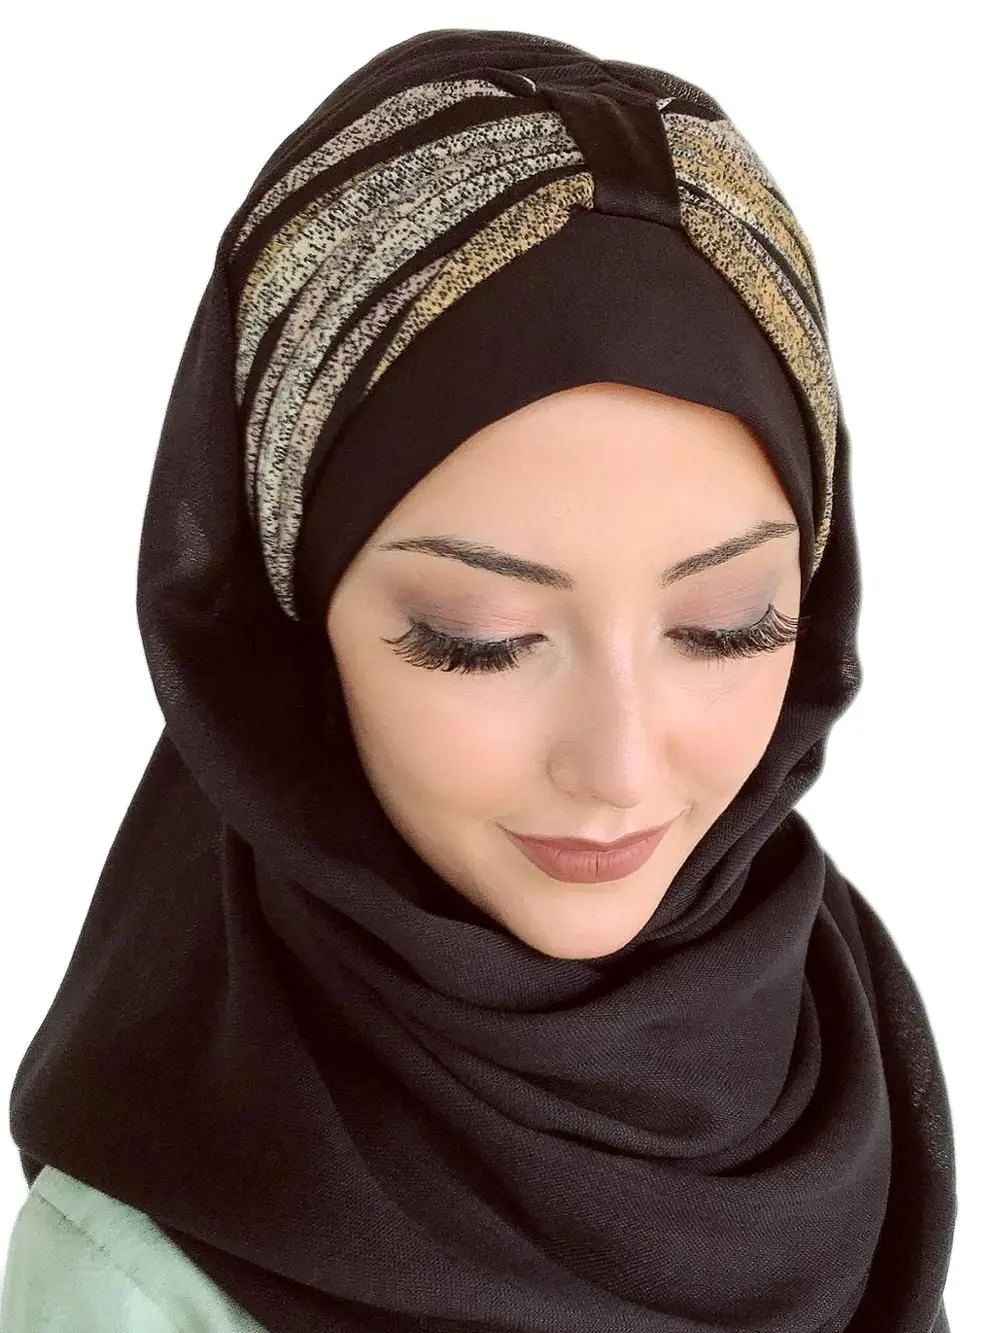 

2021 Yeni Moda Hijab Müslüman Başörtüsü İslami Kıyafet Eşarp Türban Şapka Fular Kırçıllı Sarı Pembe Çizgili Büzgülü Hazır Şal